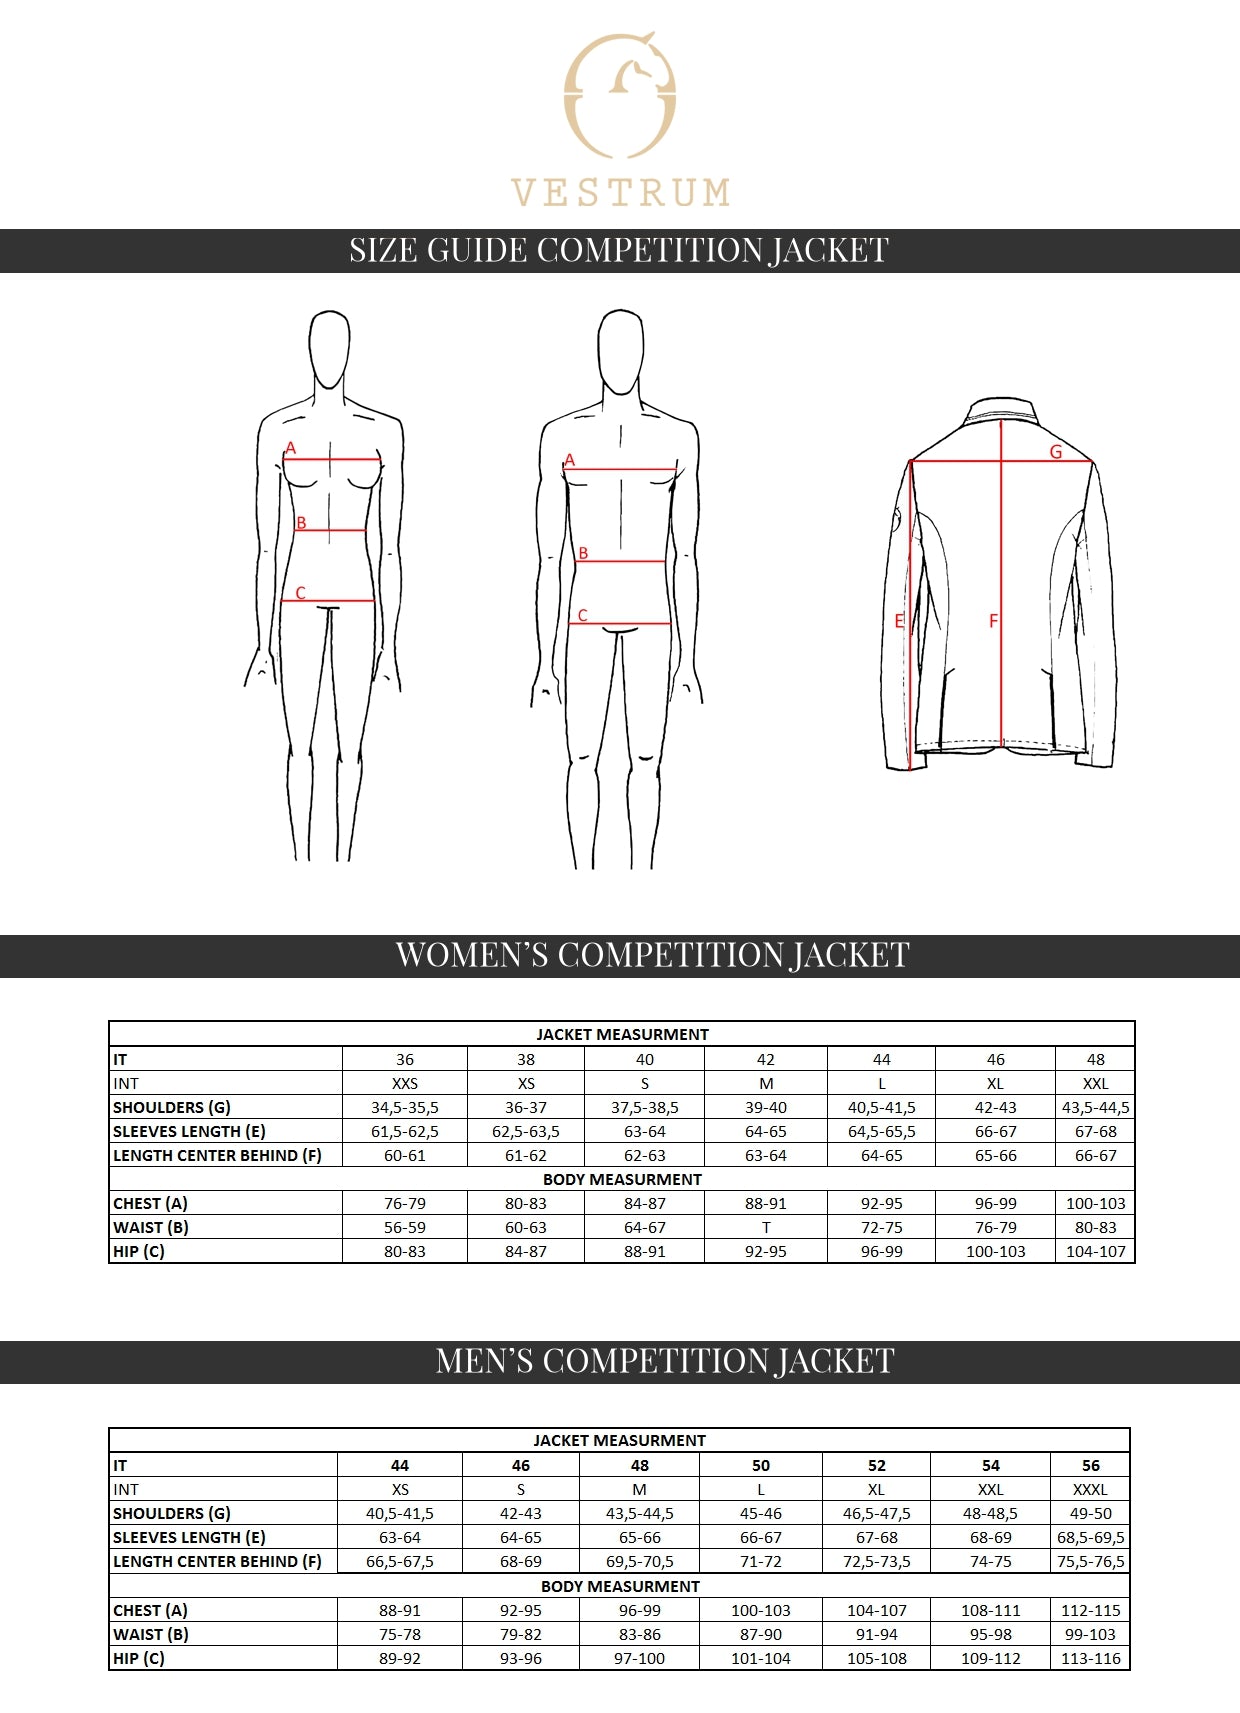 Vestrum competition jacket size chart